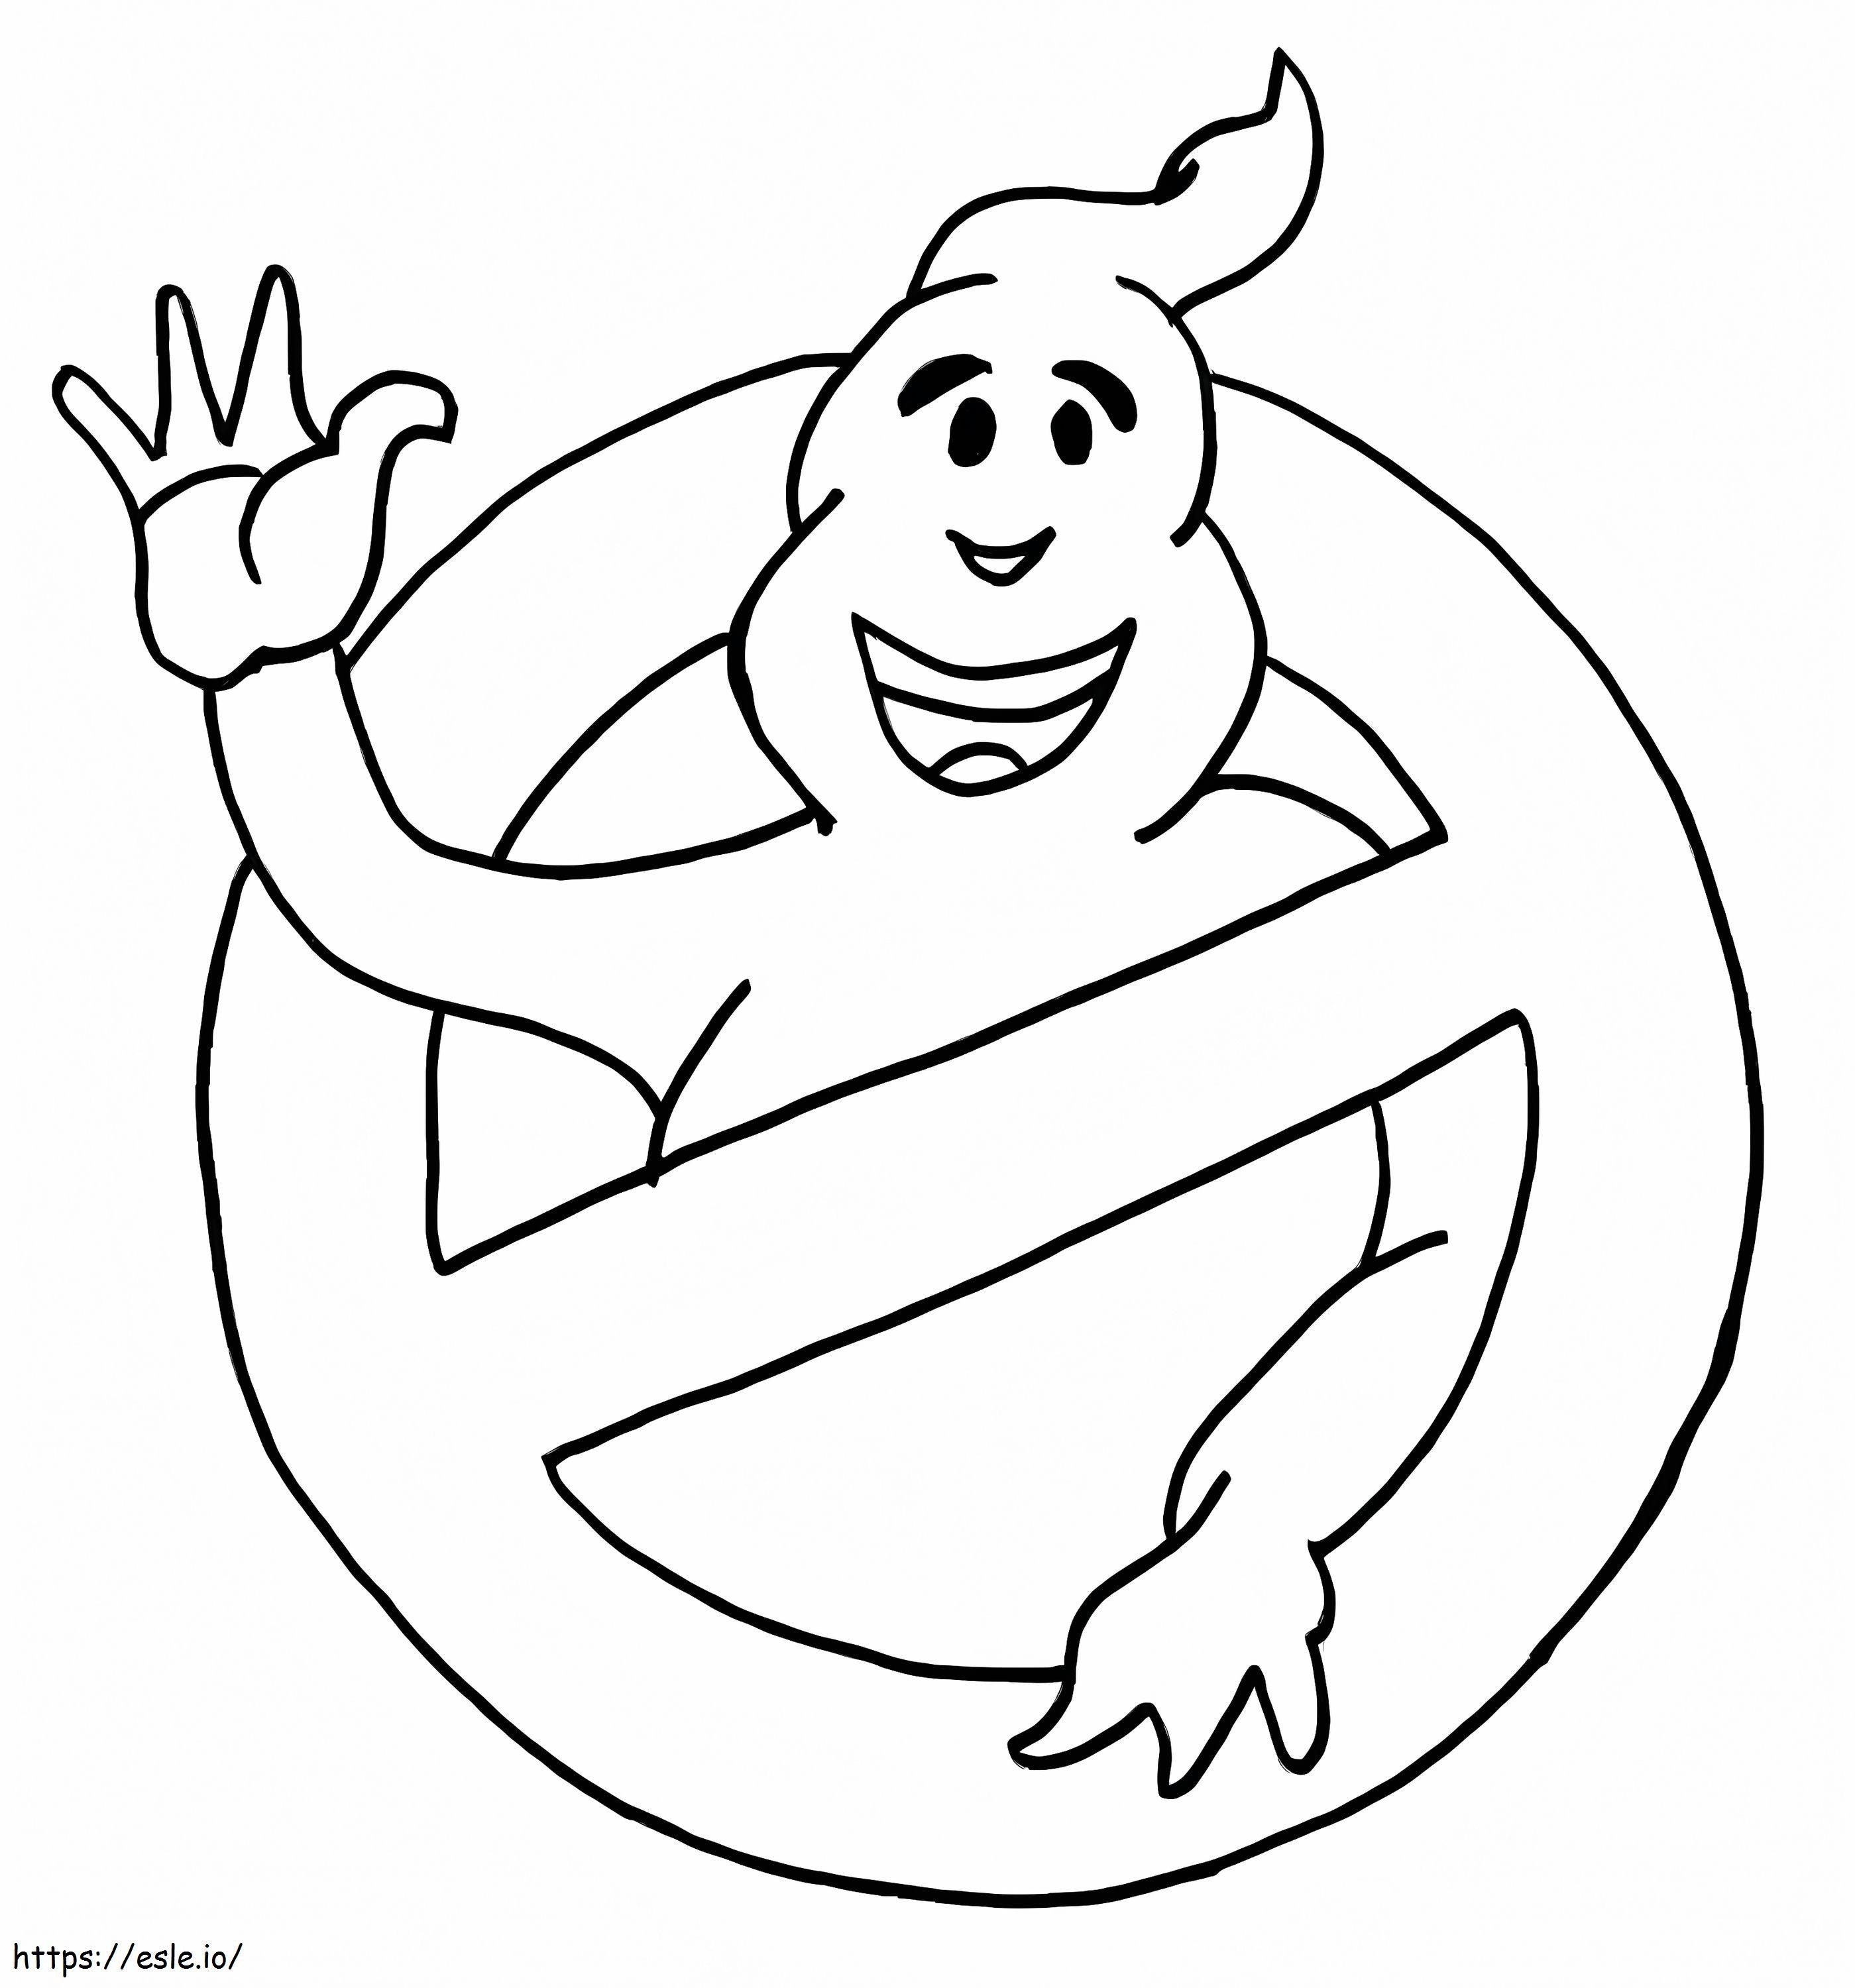 Logo-ul amuzant Ghostbusters de colorat